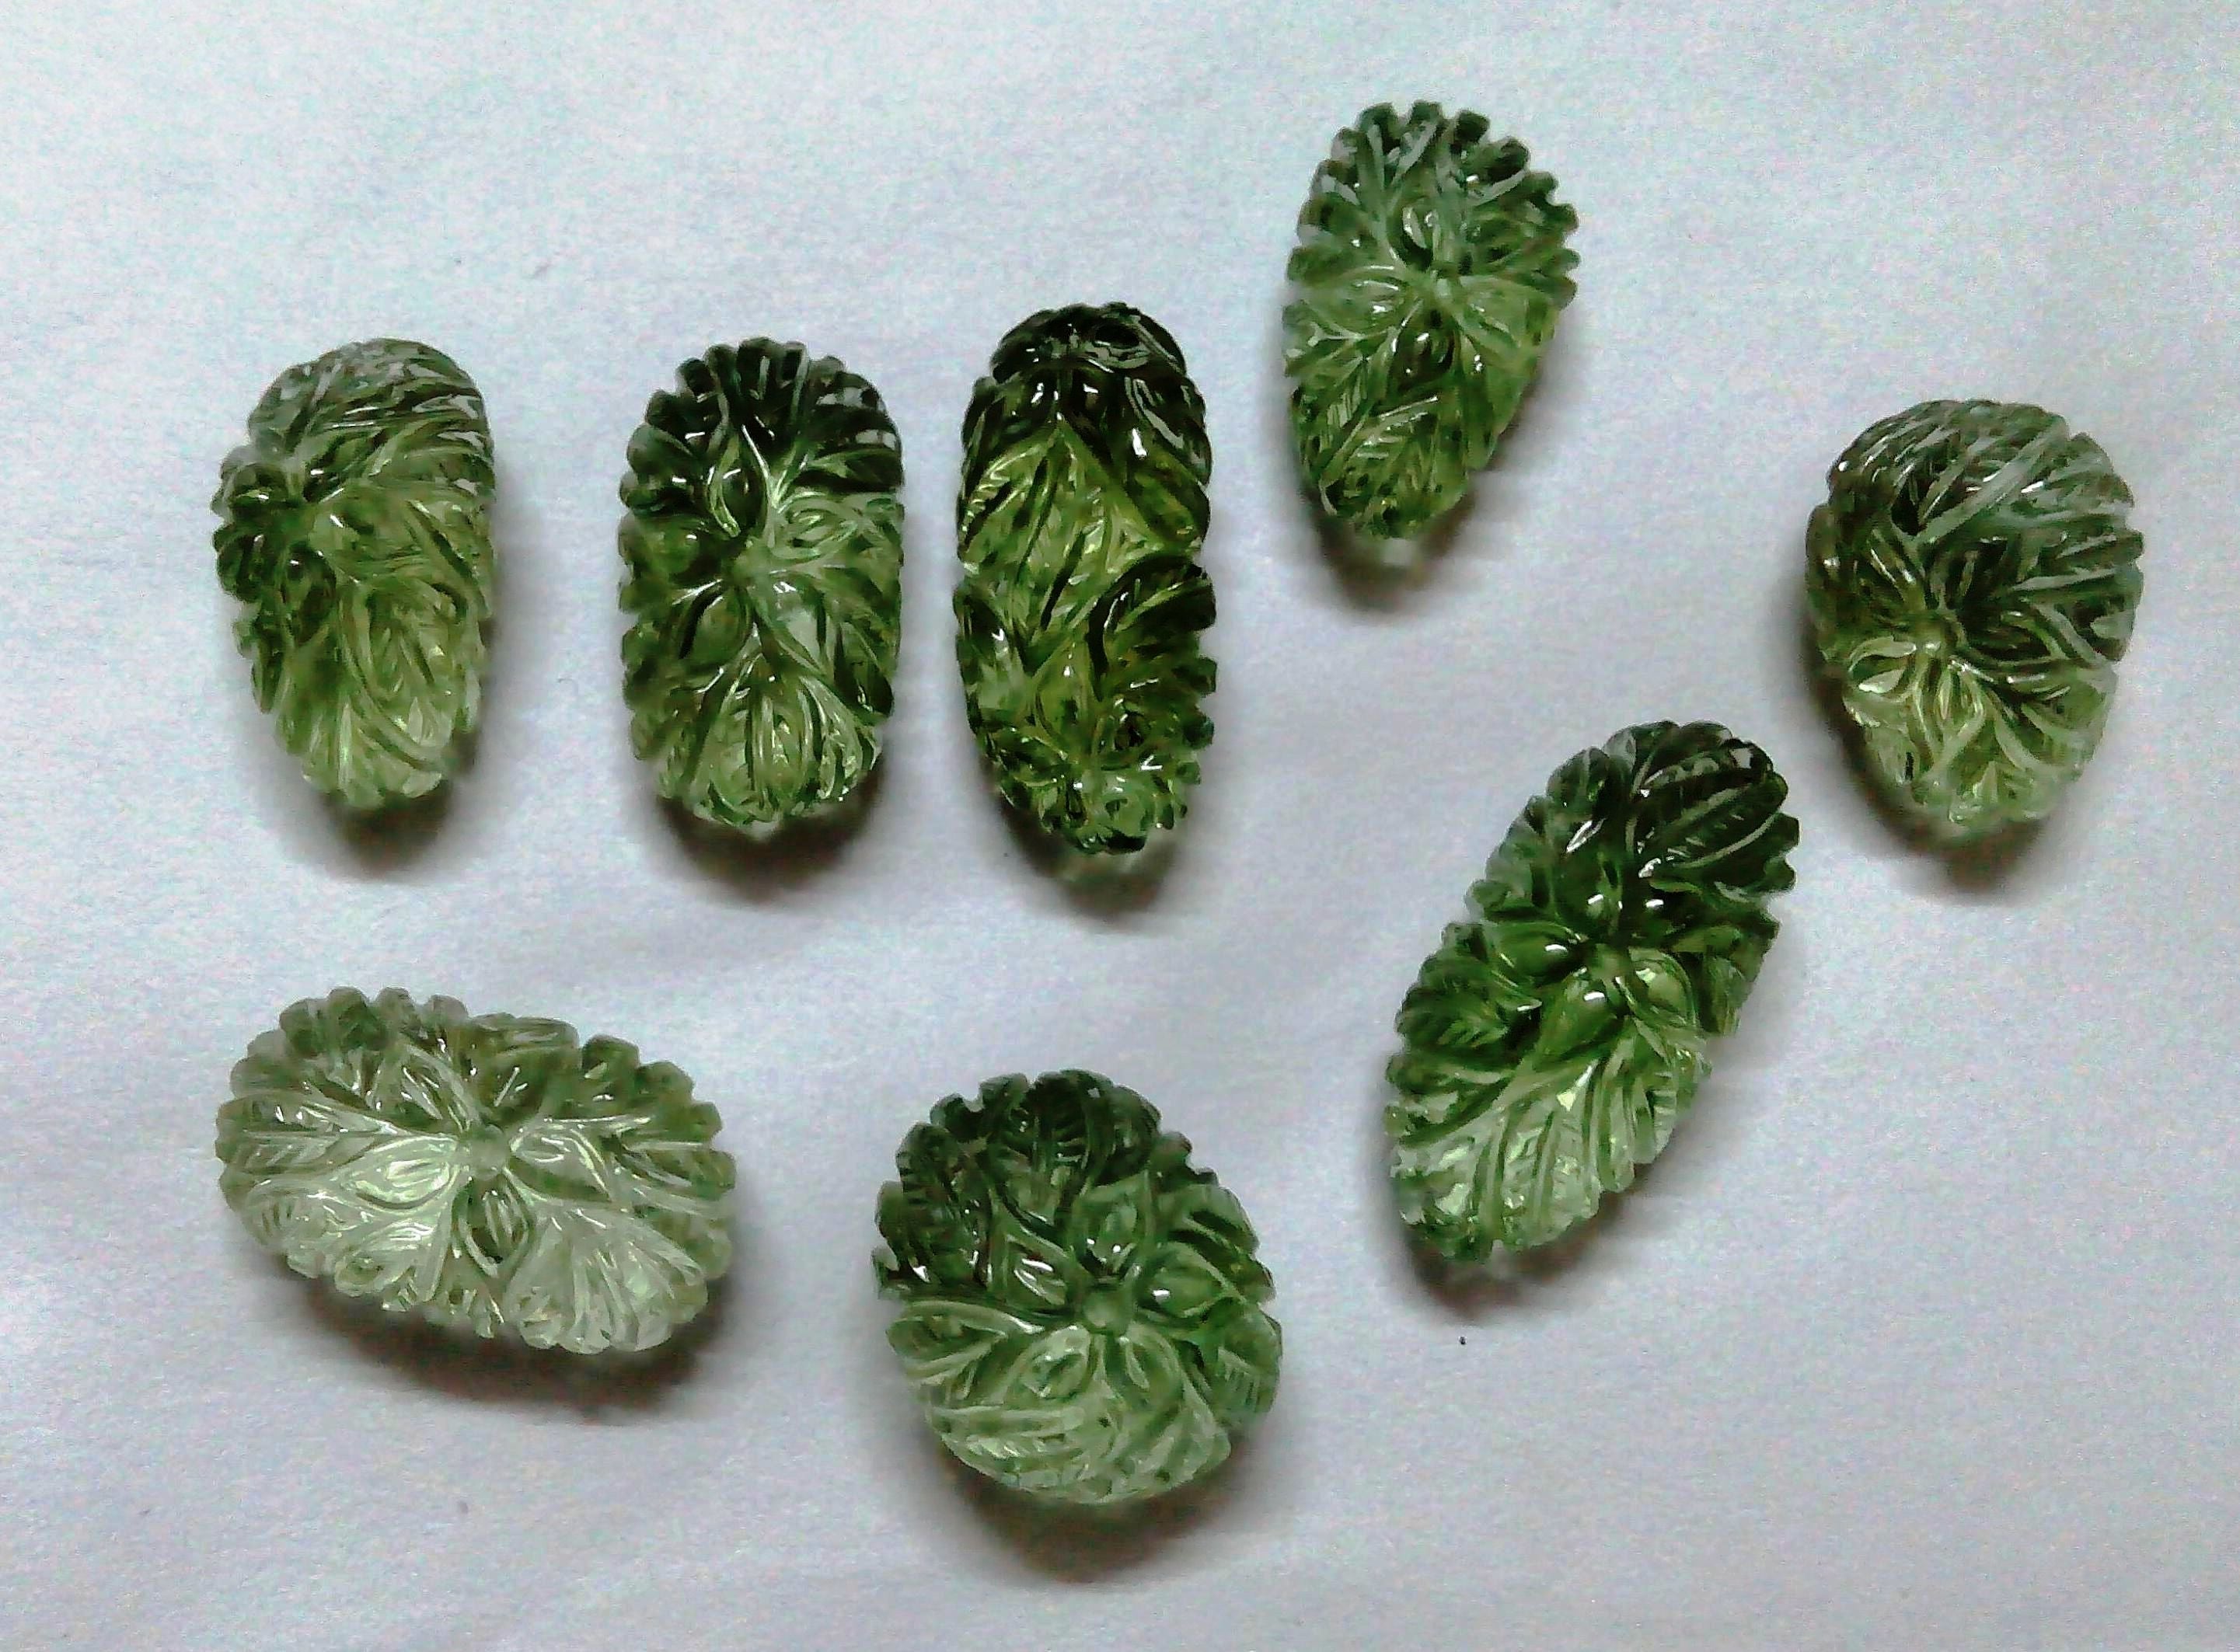 Green Amethyst Flower Carving Semi Precious Gemstone (1 Piece) | Book Bargain Buy